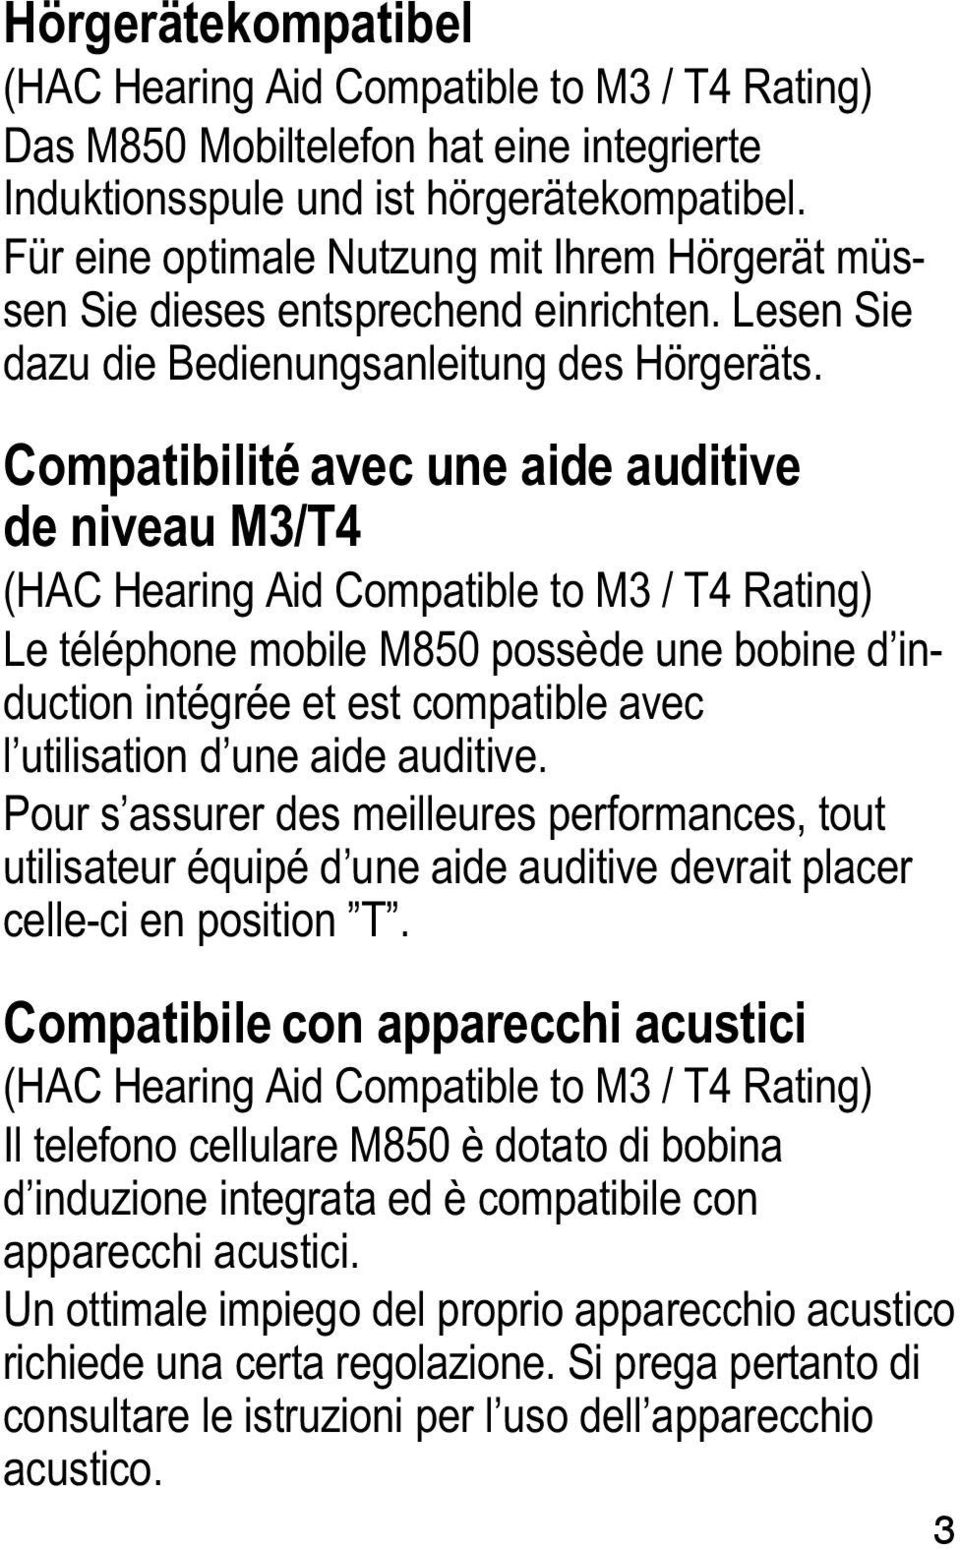 Compatibilité avec une aide auditive de niveau M3/T4 (HAC Hearing Aid Compatible to M3 / T4 Rating) Le téléphone mobile M850 possède une bobine d induction intégrée et est compatible avec l